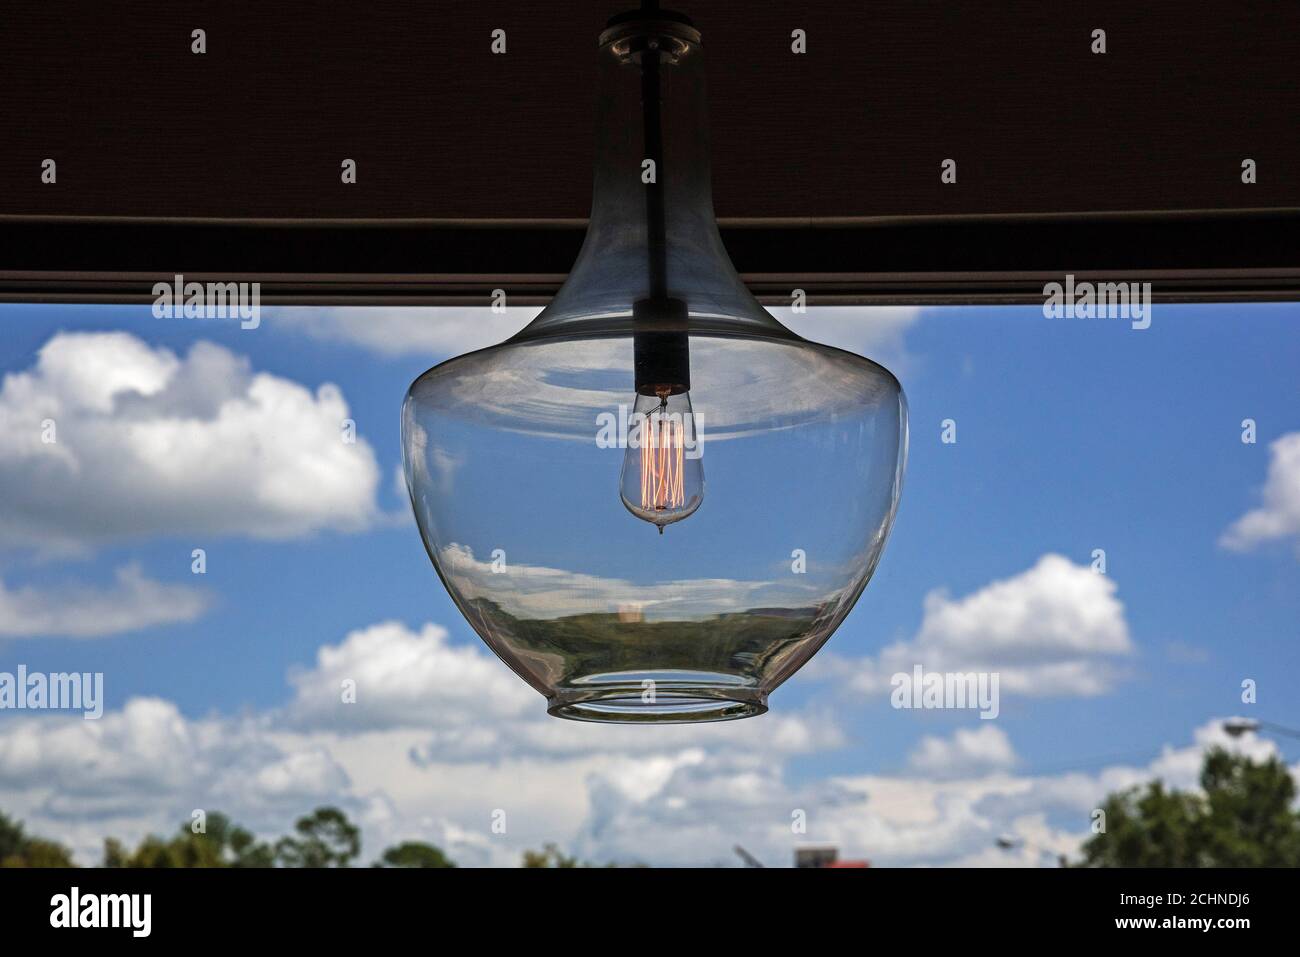 La lampadina a filamento ispirata a Thomas Edison, dal look retrò, risplende in un mondo appeso in un ristorante. Foto Stock